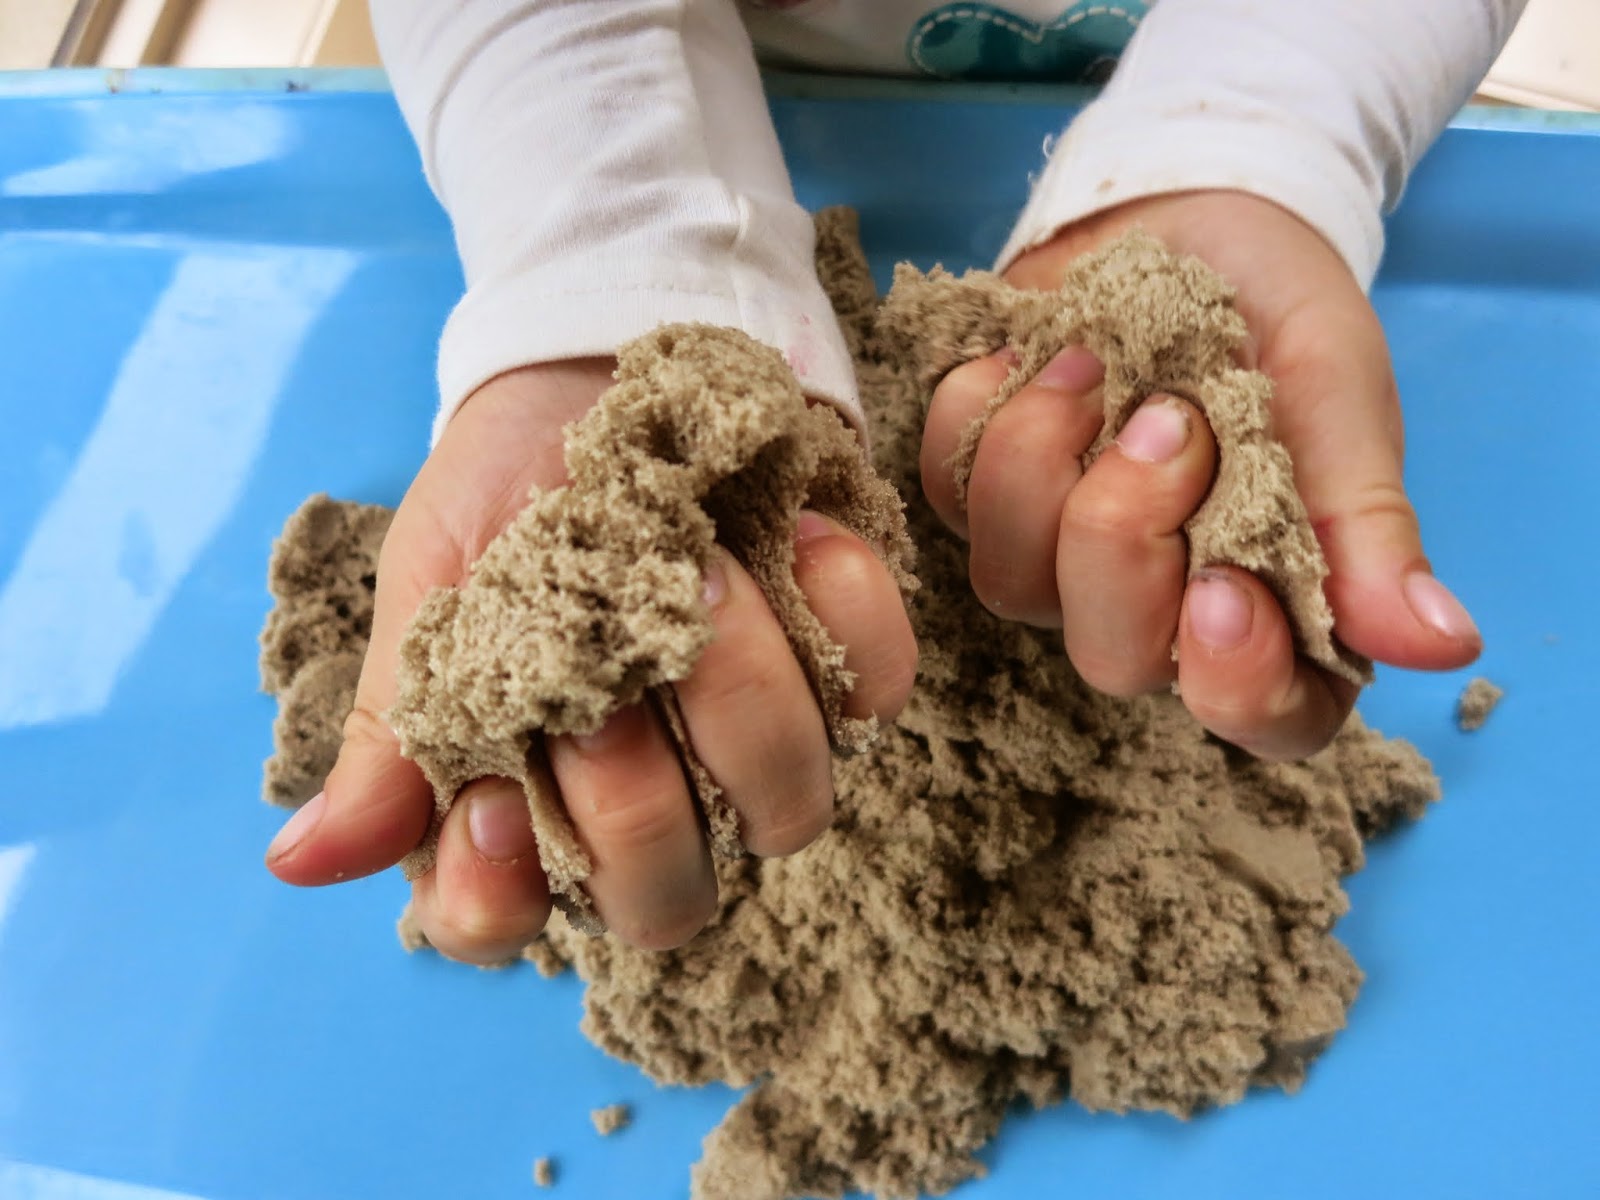 Кинетический песок, пластилин, пальчиковые краски и прочие субстанции своими руками